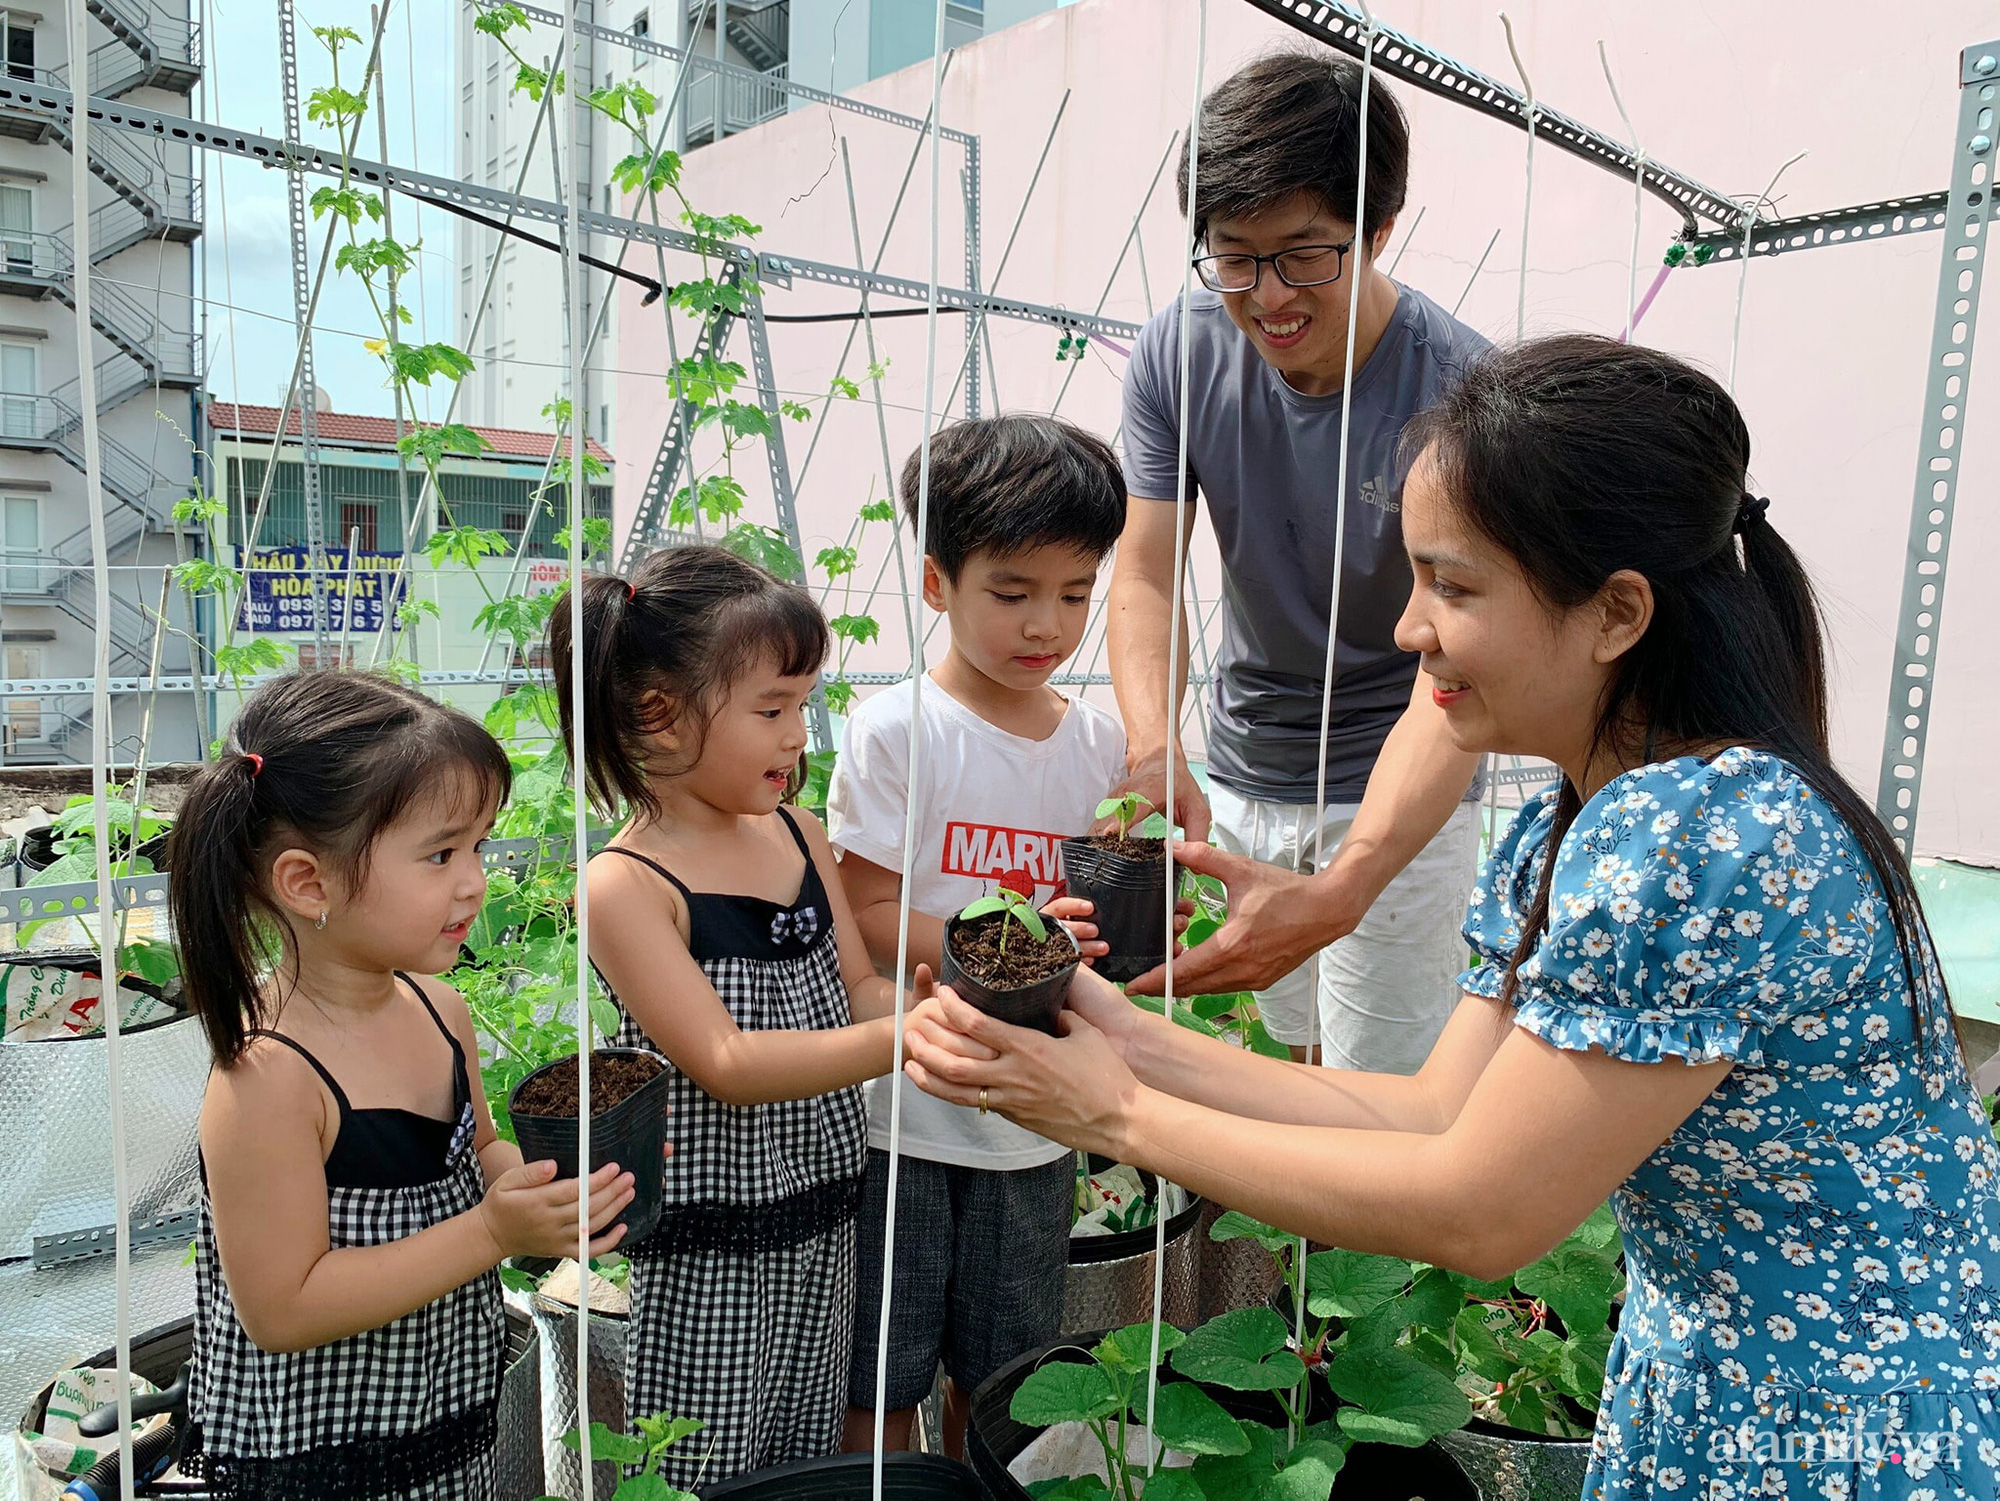 Khu vườn xanh tươi trên mái nhà và bí quyết đáng học hỏi của mẹ 3 con ở Sài Gòn - Ảnh 1.